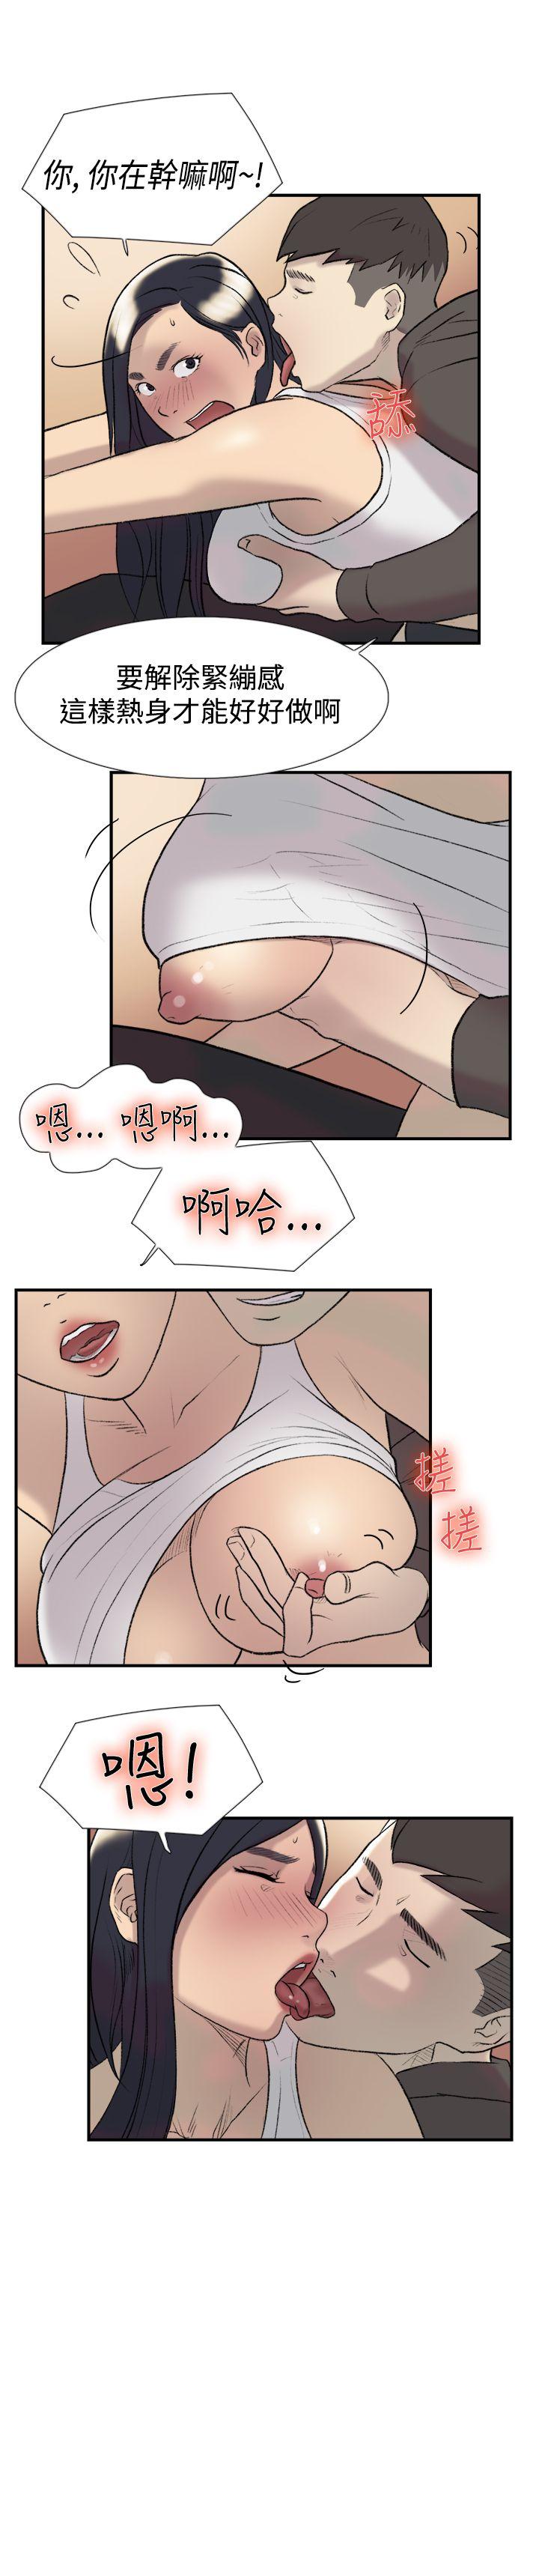 韩国污漫画 雙重戀愛 第19话 14